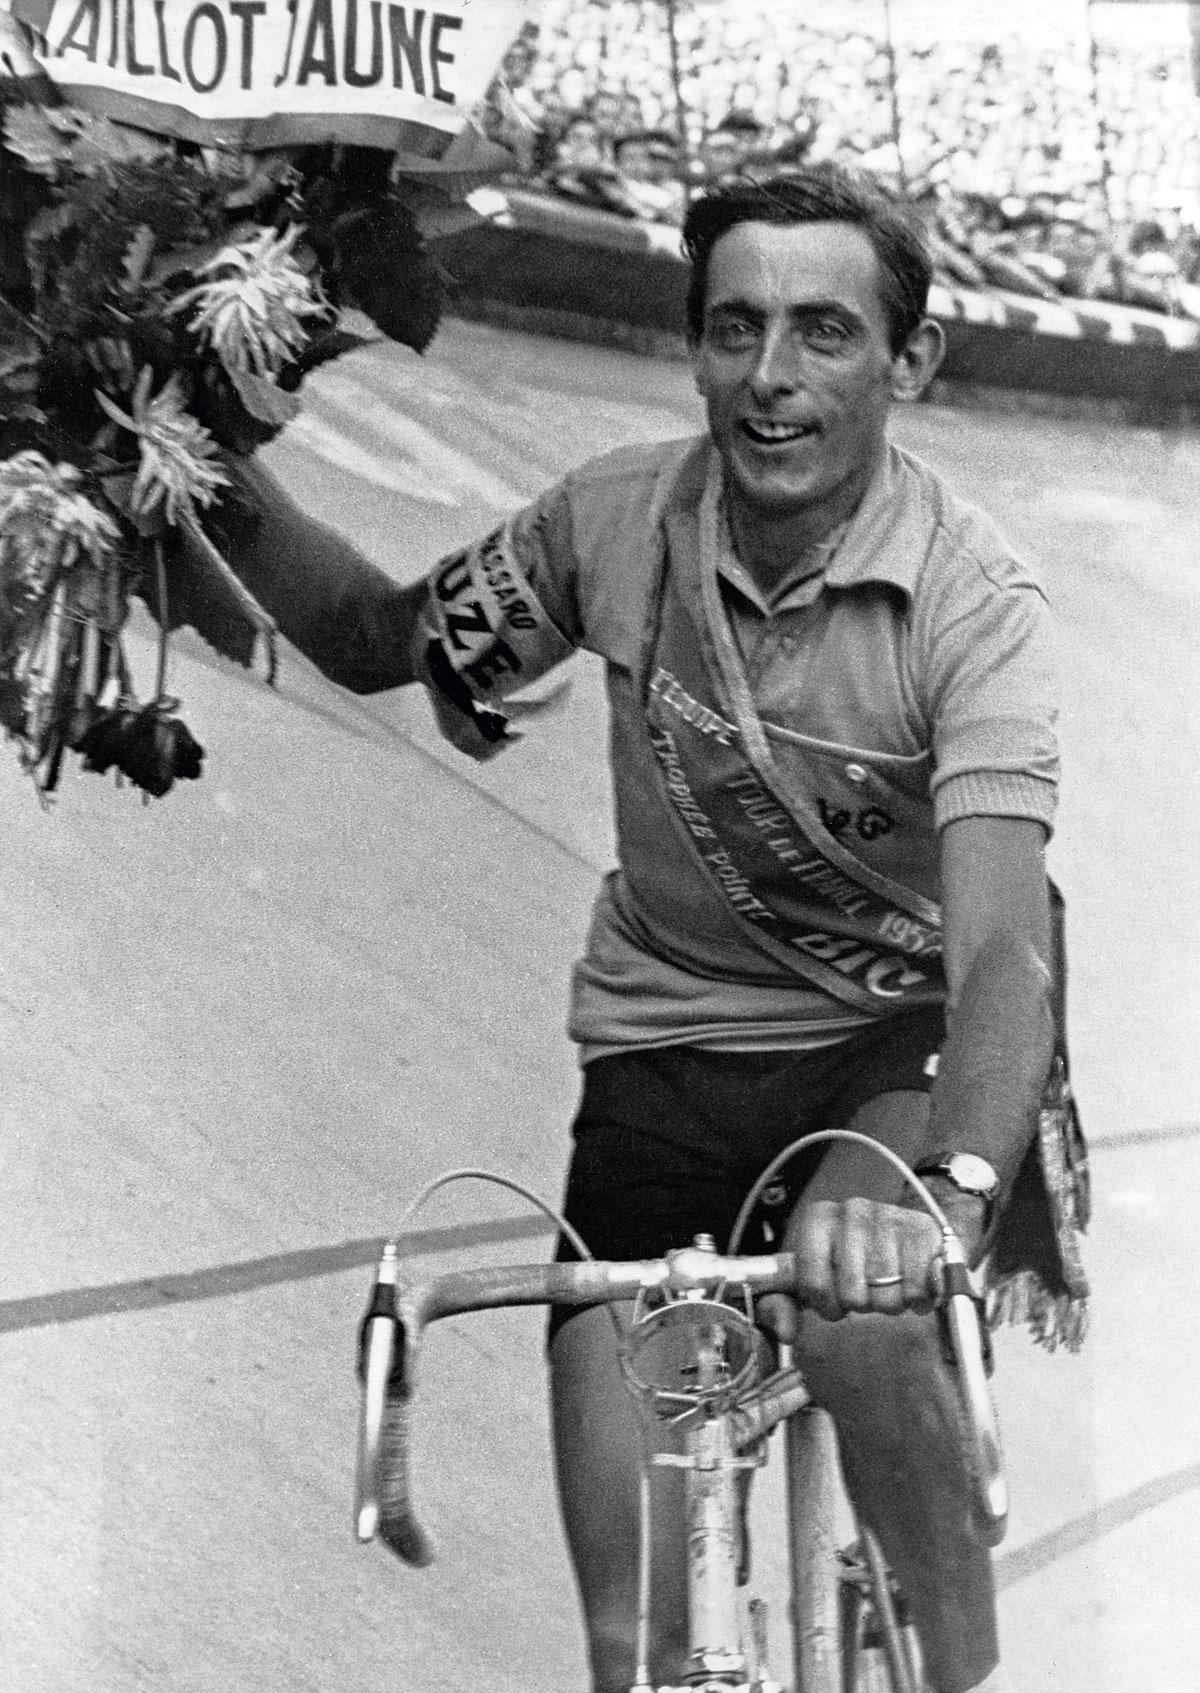 Trois multiples vainqueurs du Tour de France: Fausto Coppi (1952).